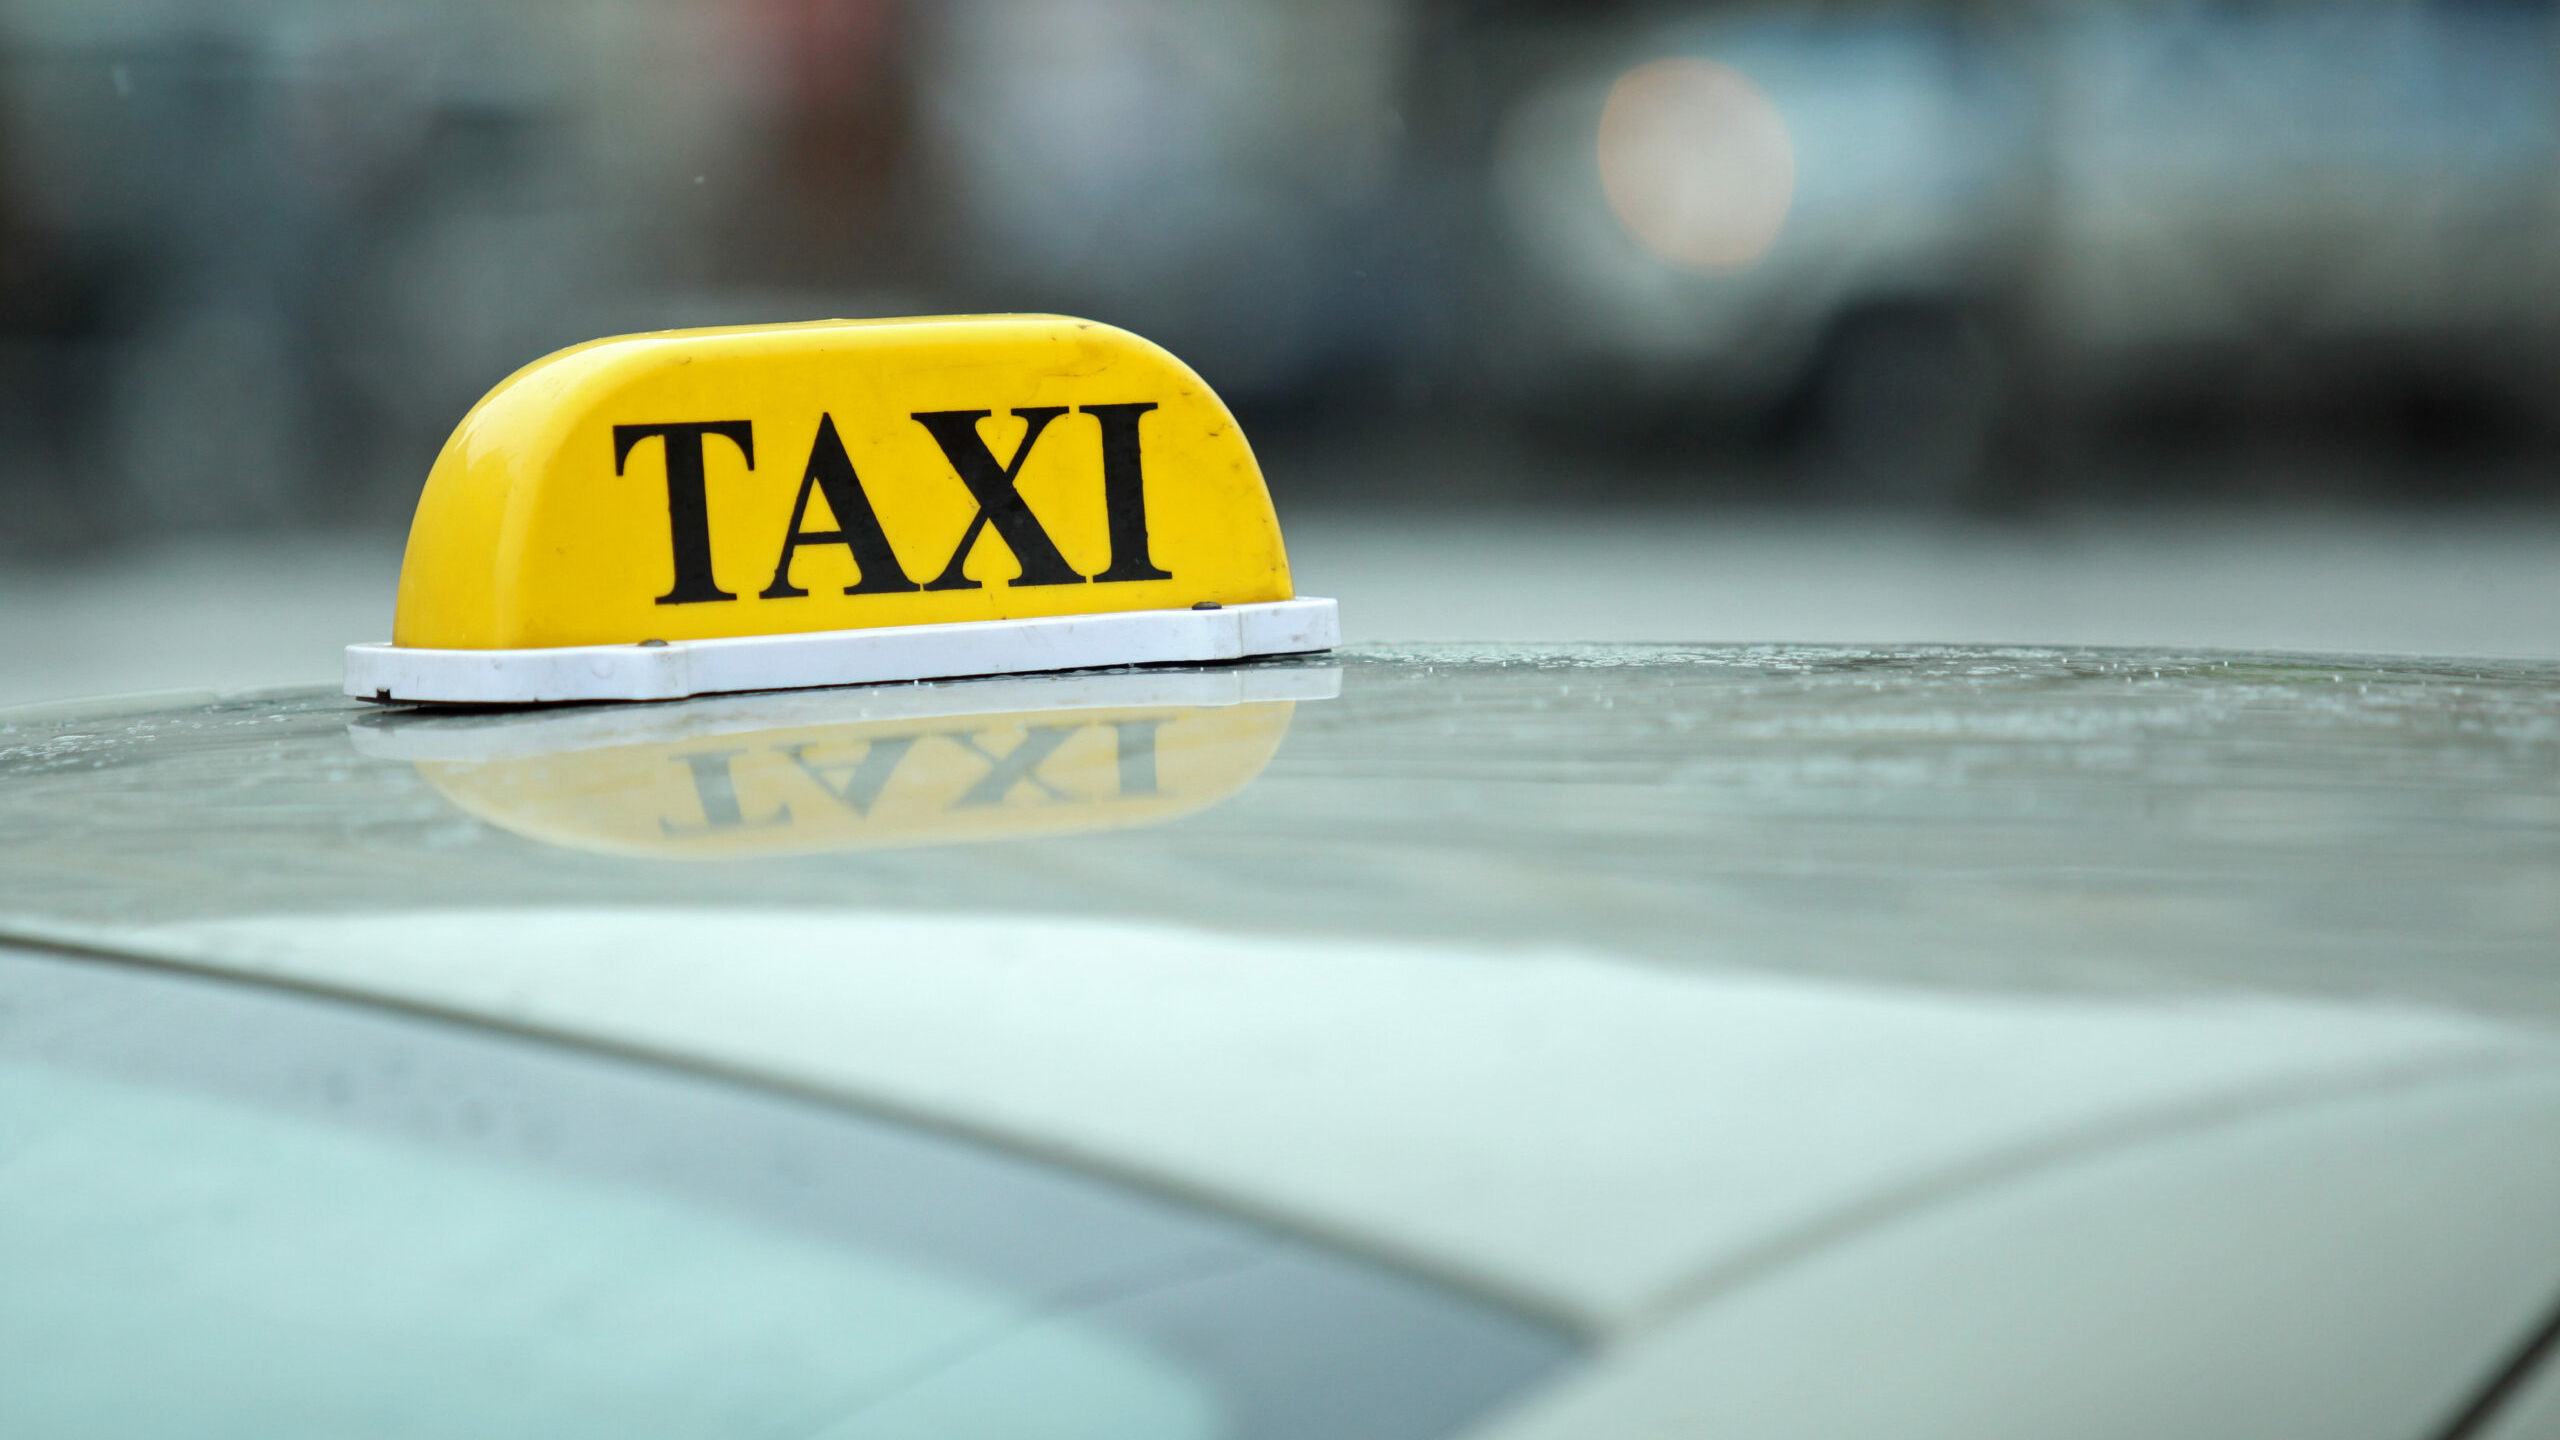 В Ленобласти не желавшие оплачивать поездку в такси клиенты избили и ограбили водителя